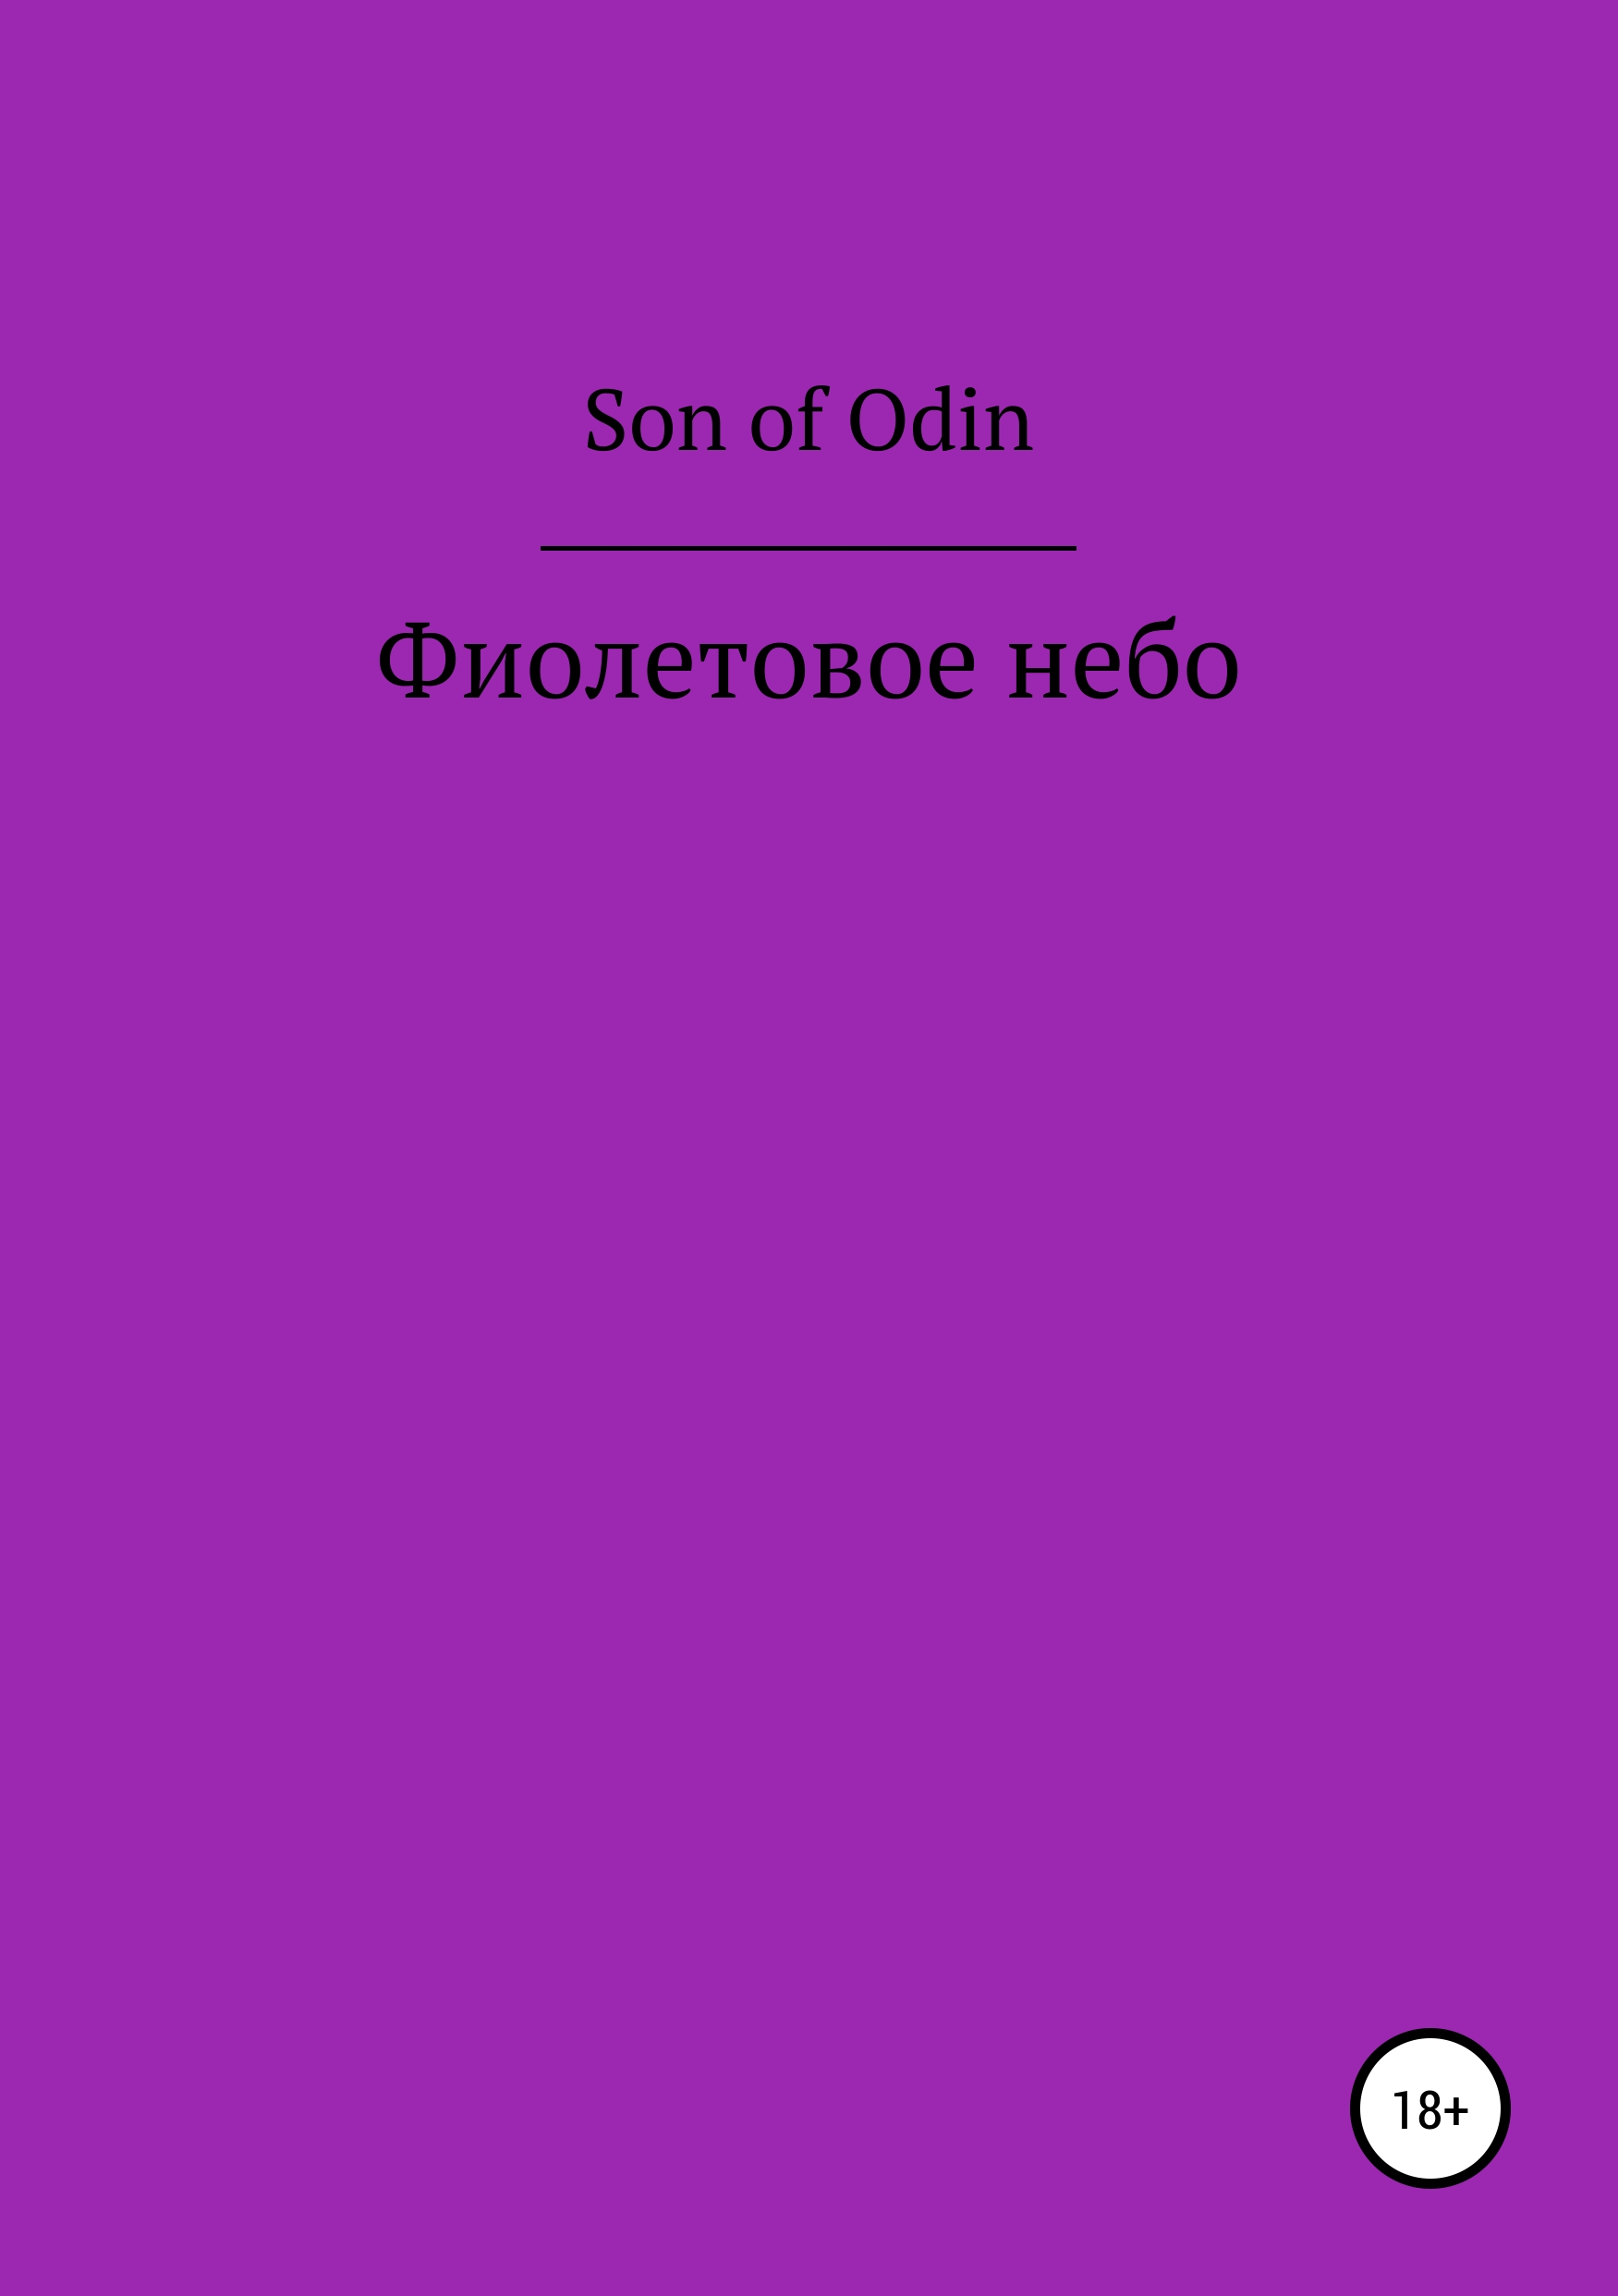 Скачать Фиолетовое небо - Son of Odin